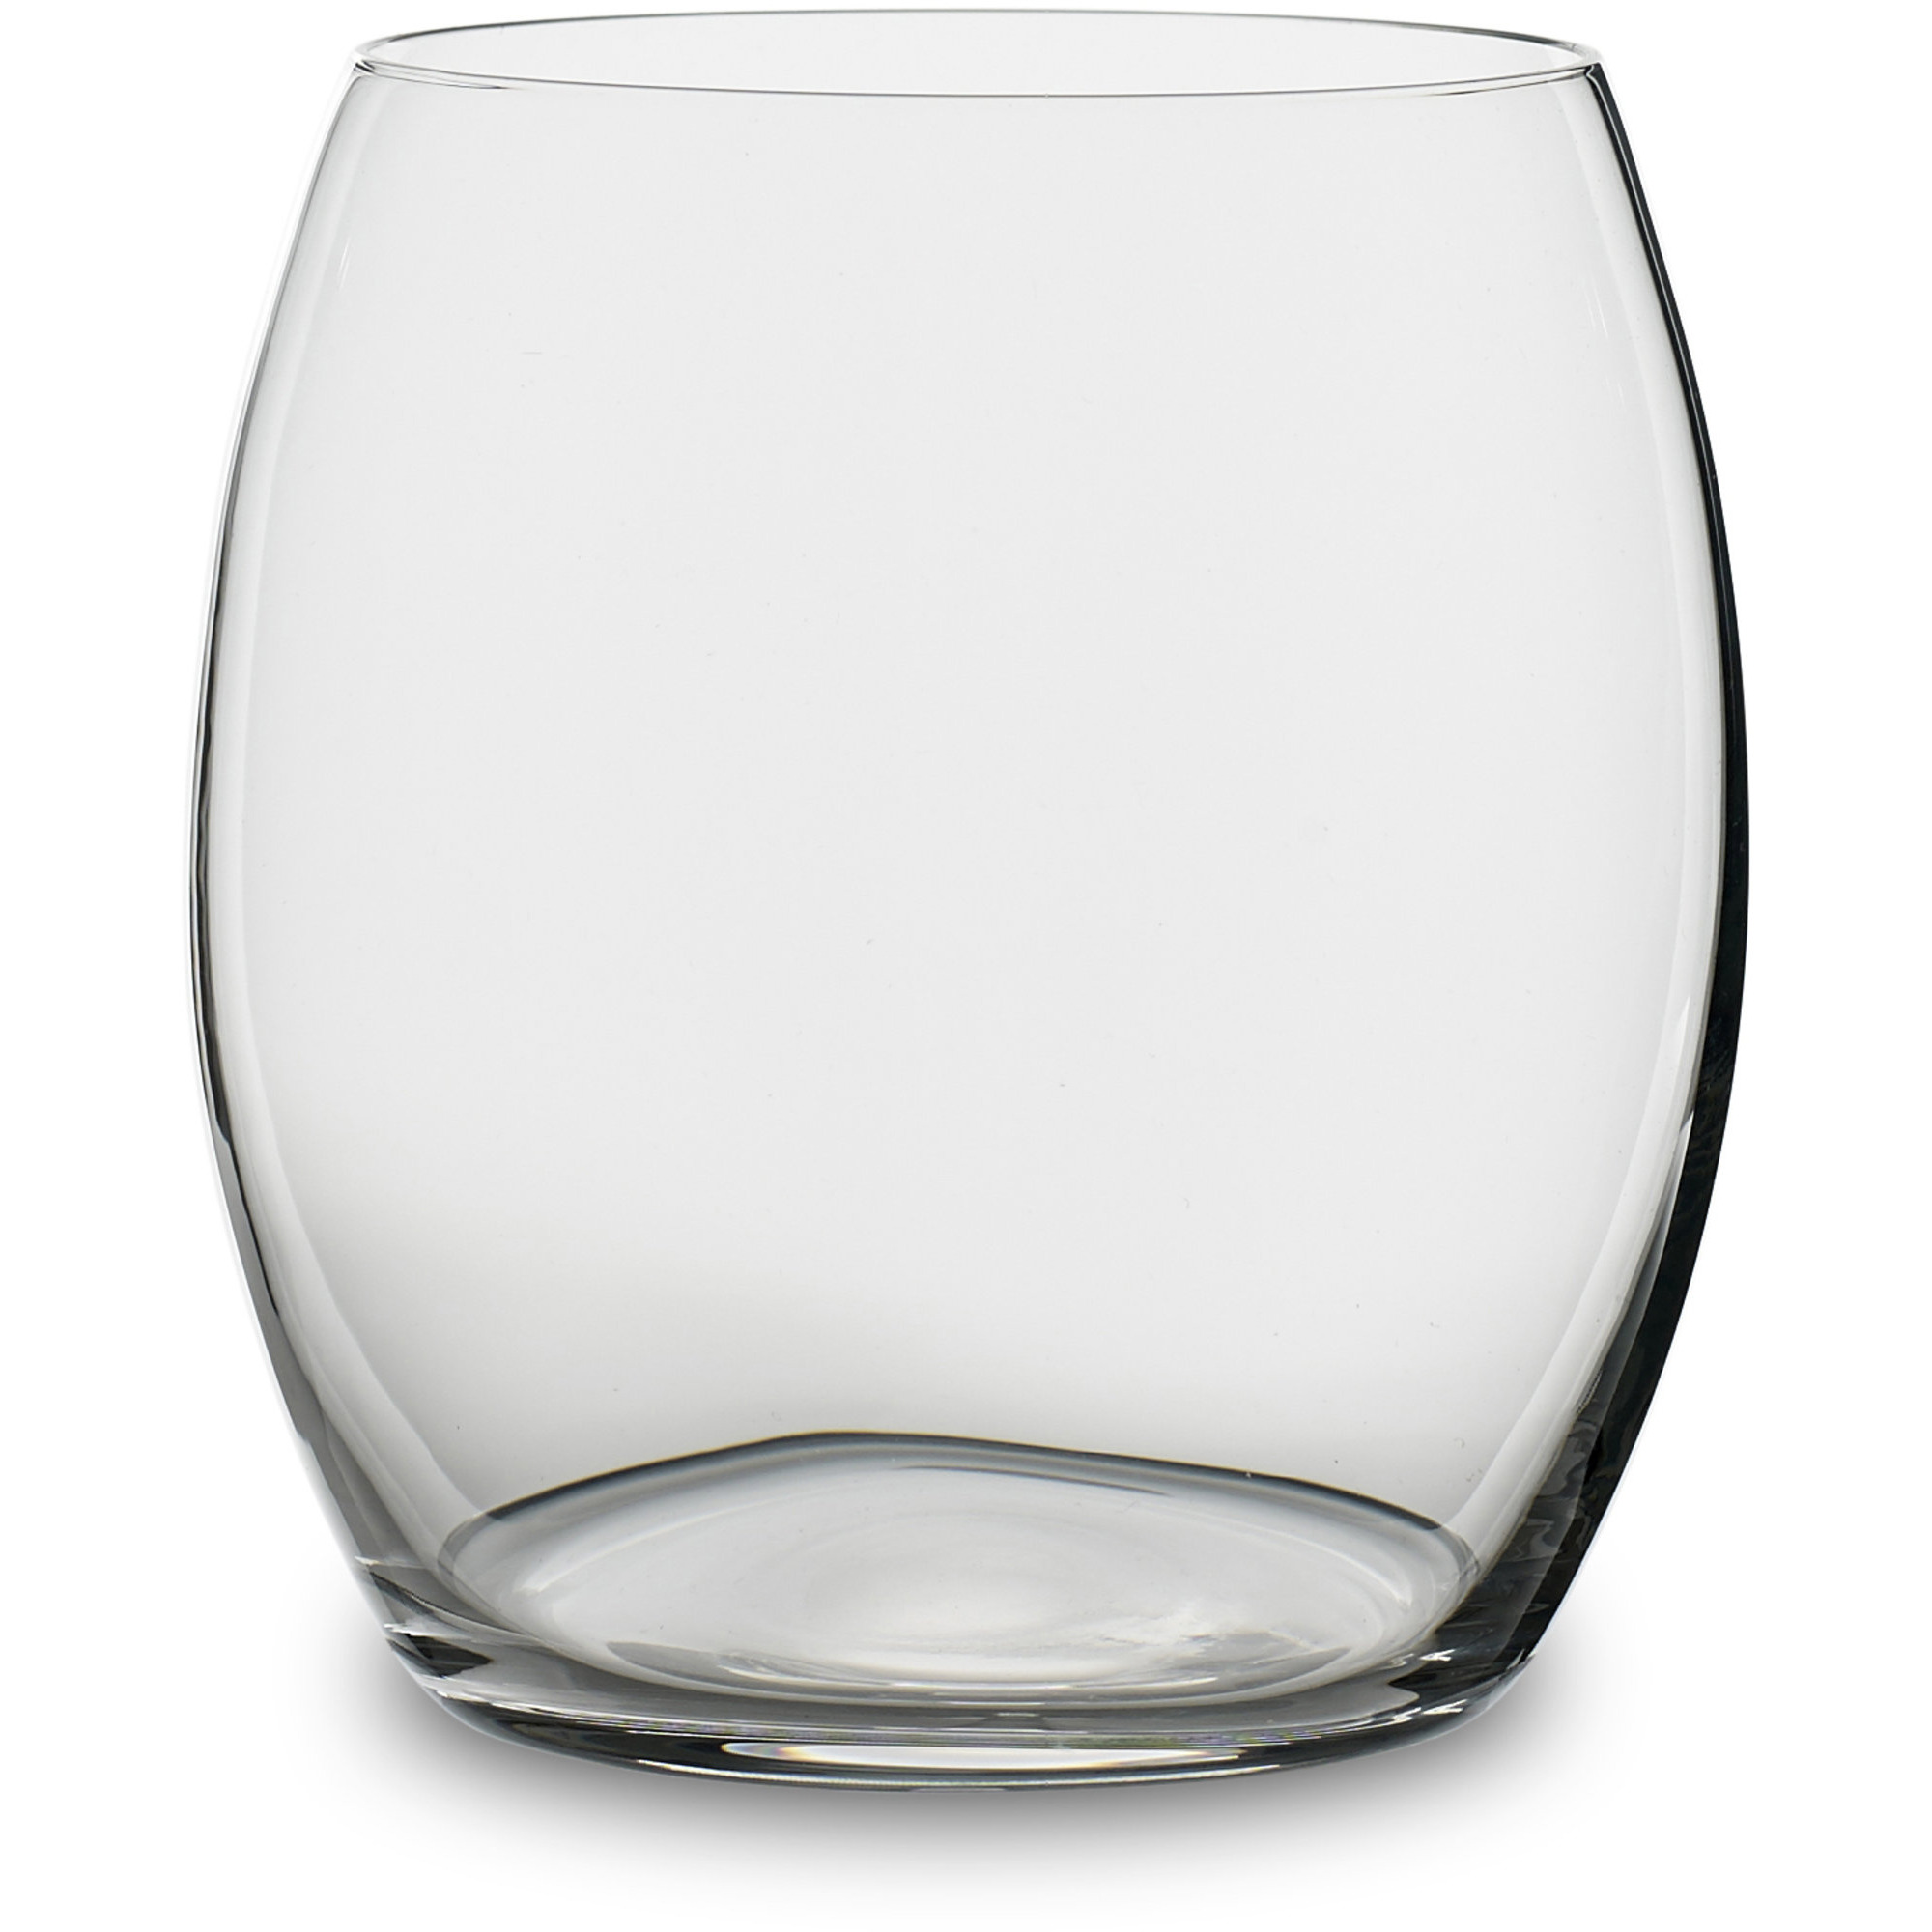 Bitz Vattenglas 53 cl. 4 stk